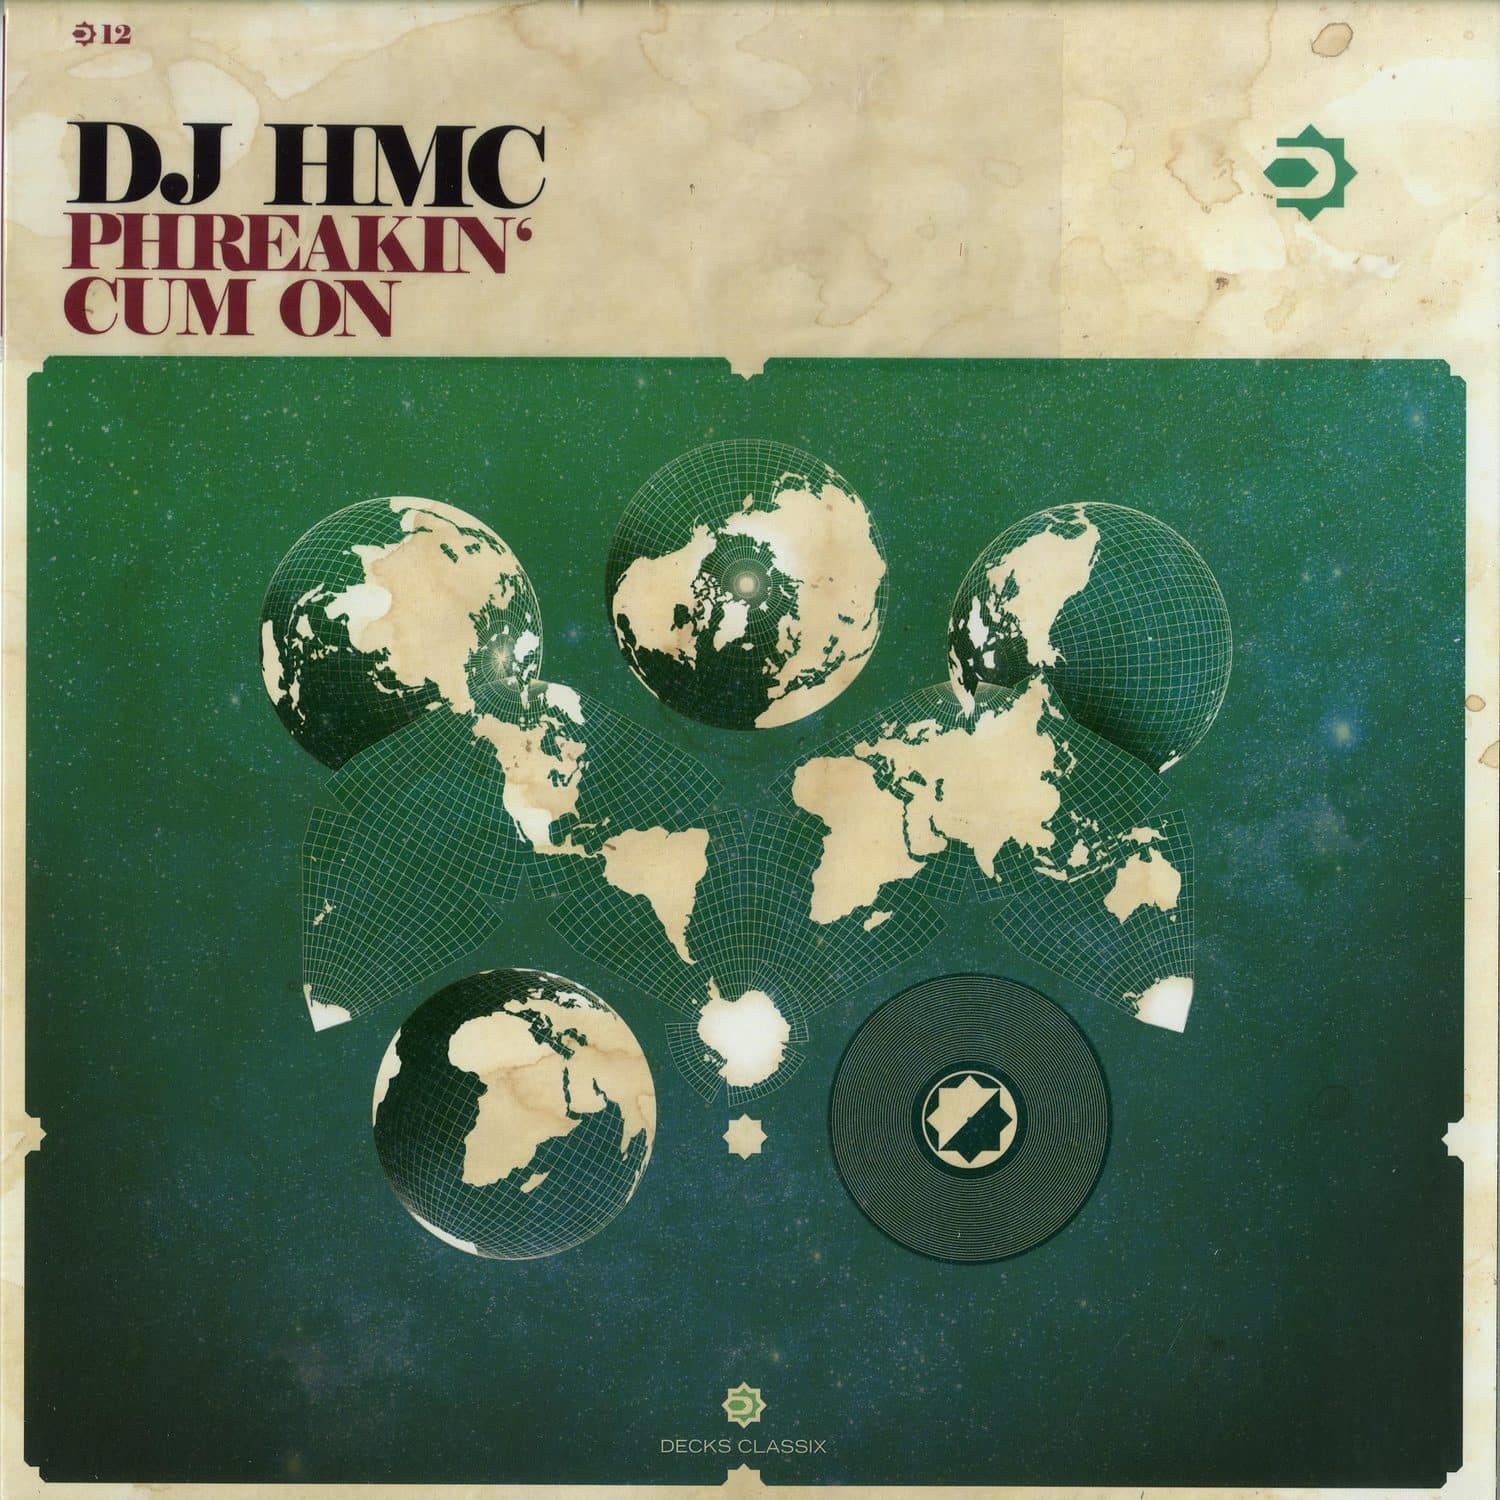 DJ HMC - PHREAKIN / CUM ON